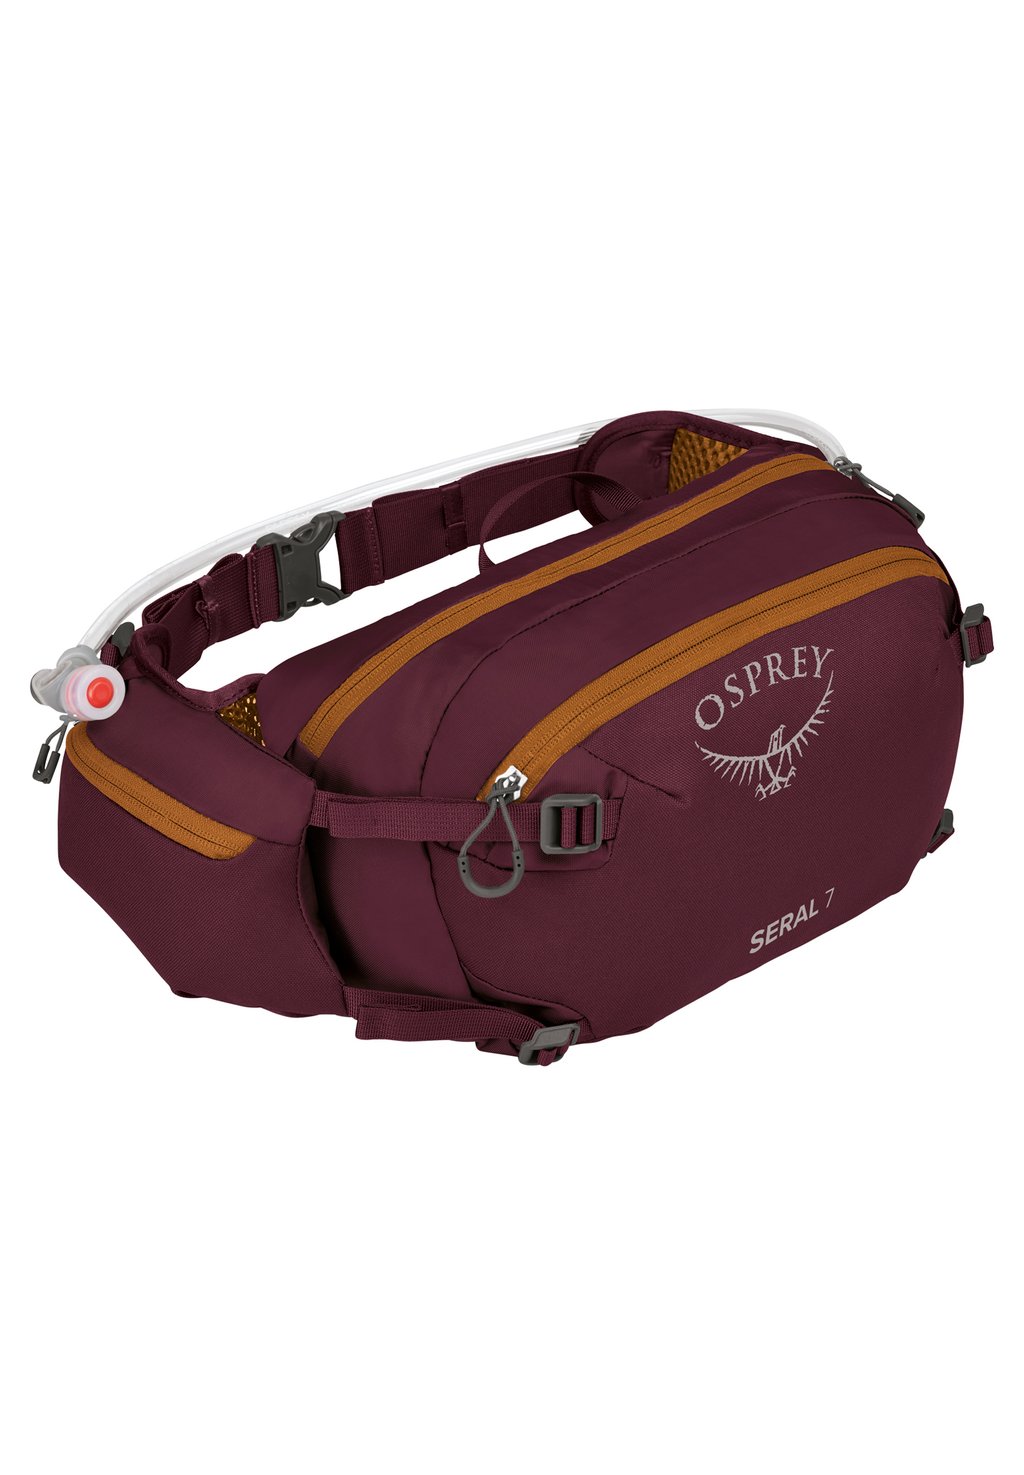 Поясная сумка SERAL 7 Osprey, цвет aprium purple